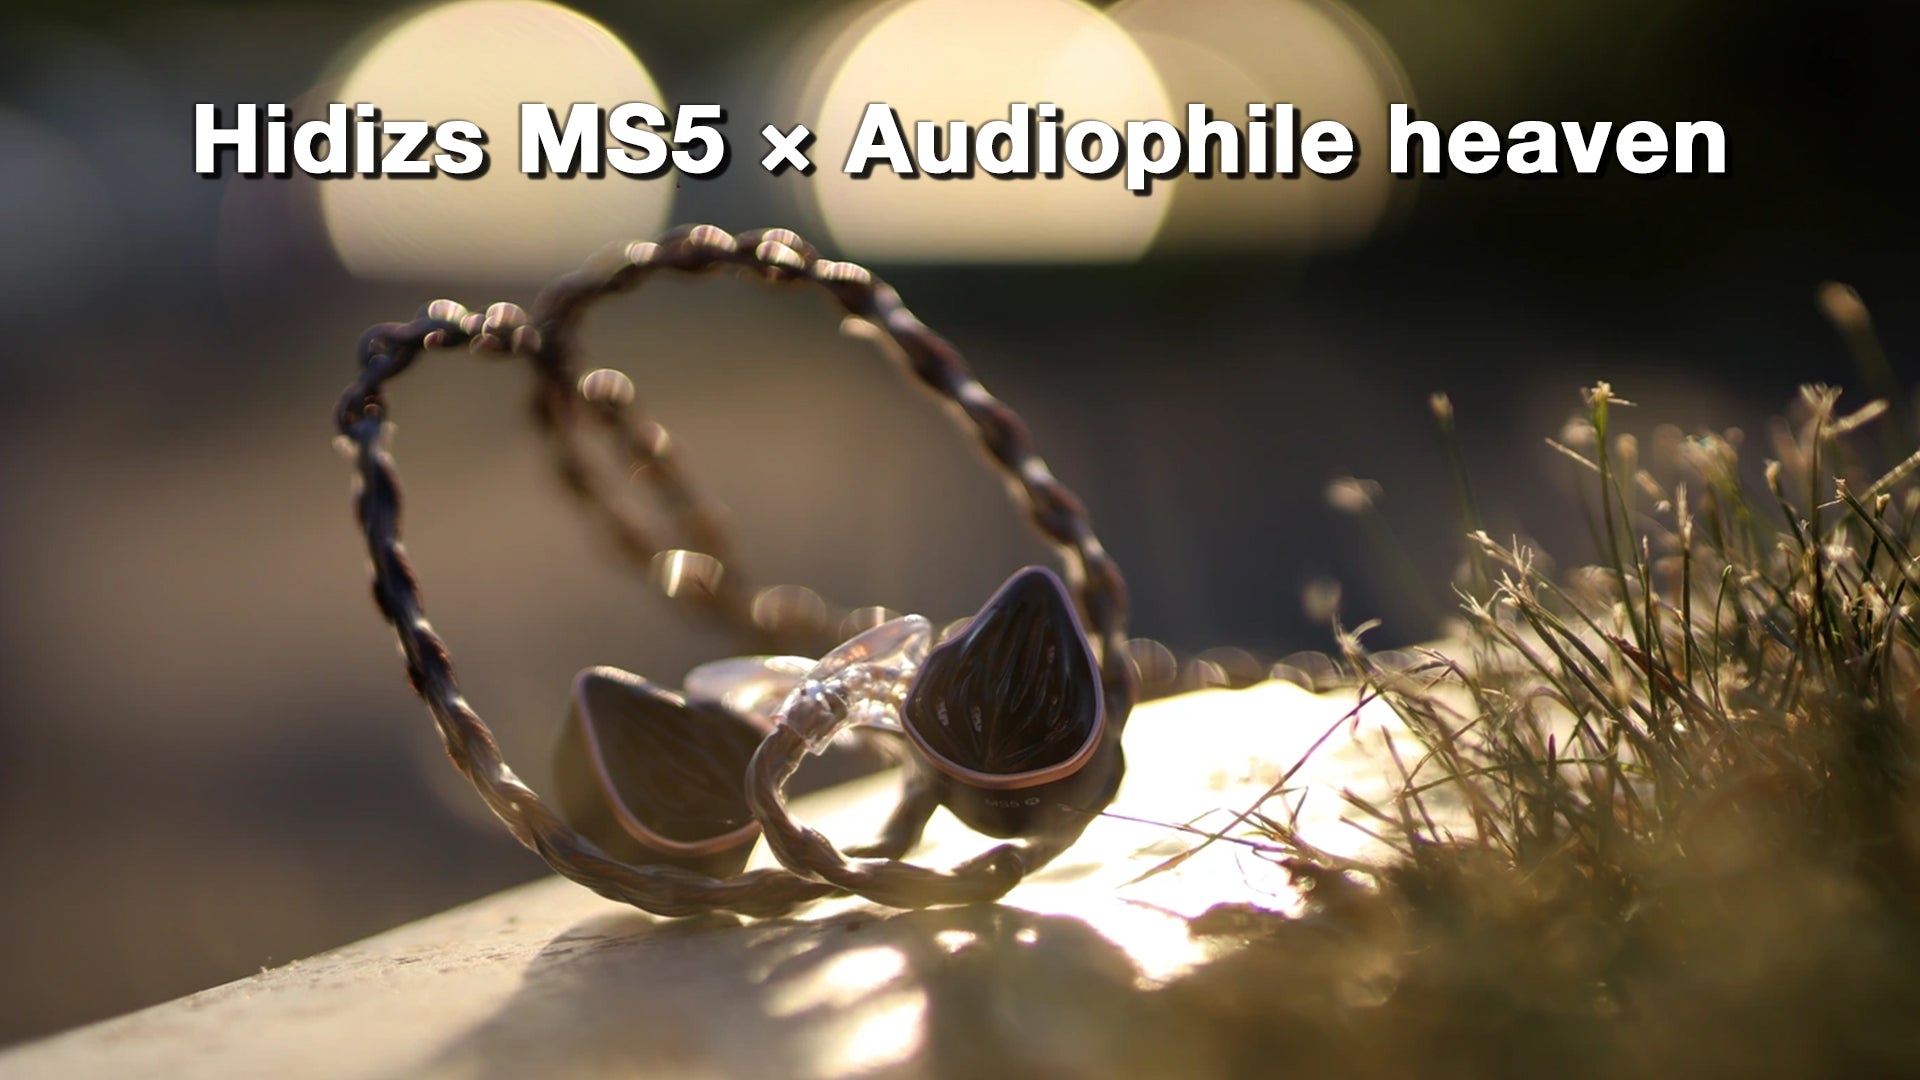 Hidizs MS5 Review - Audiophile heaven